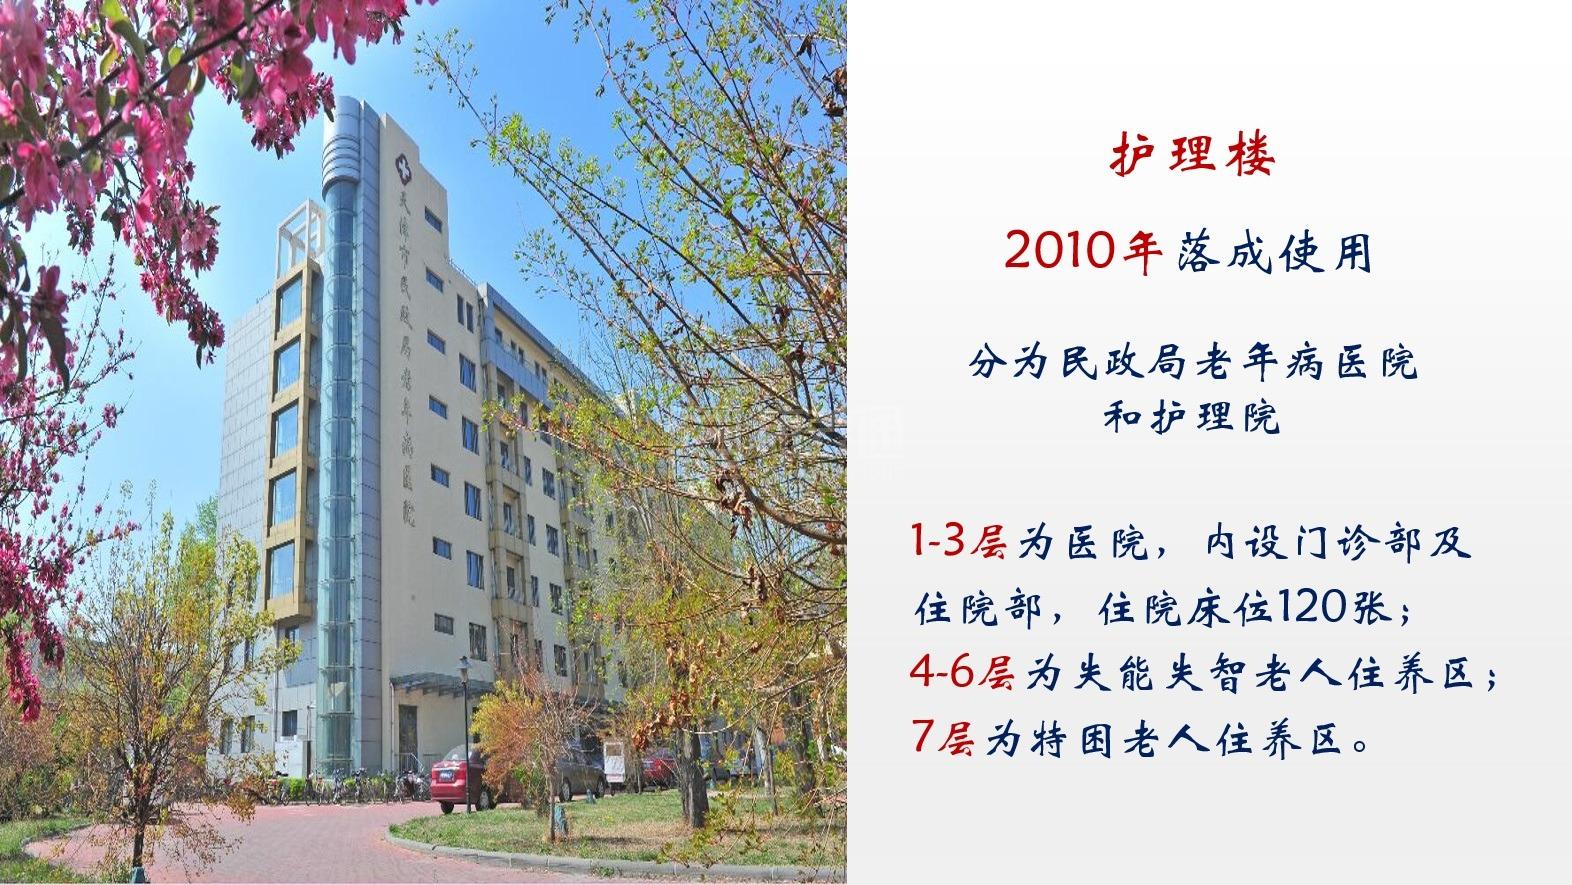 天津市养老院环境图-阳台